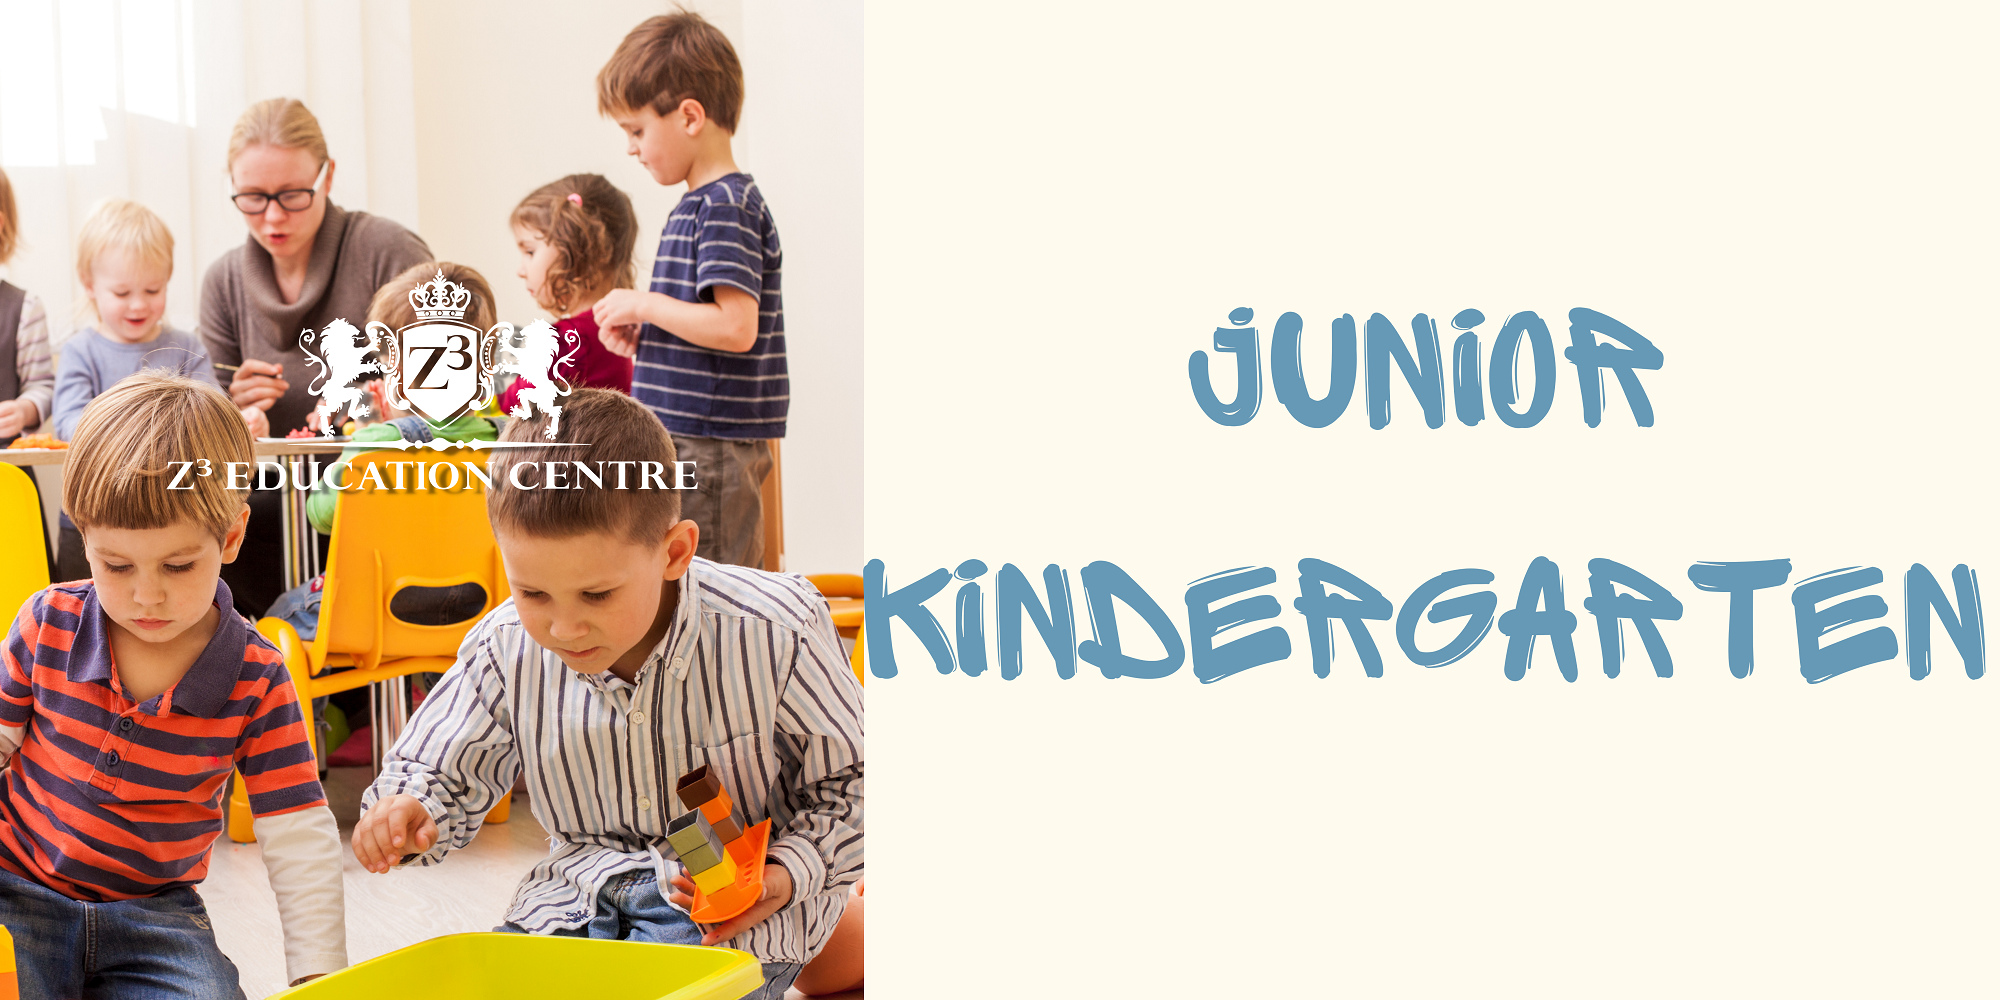 Junior Kindergarten